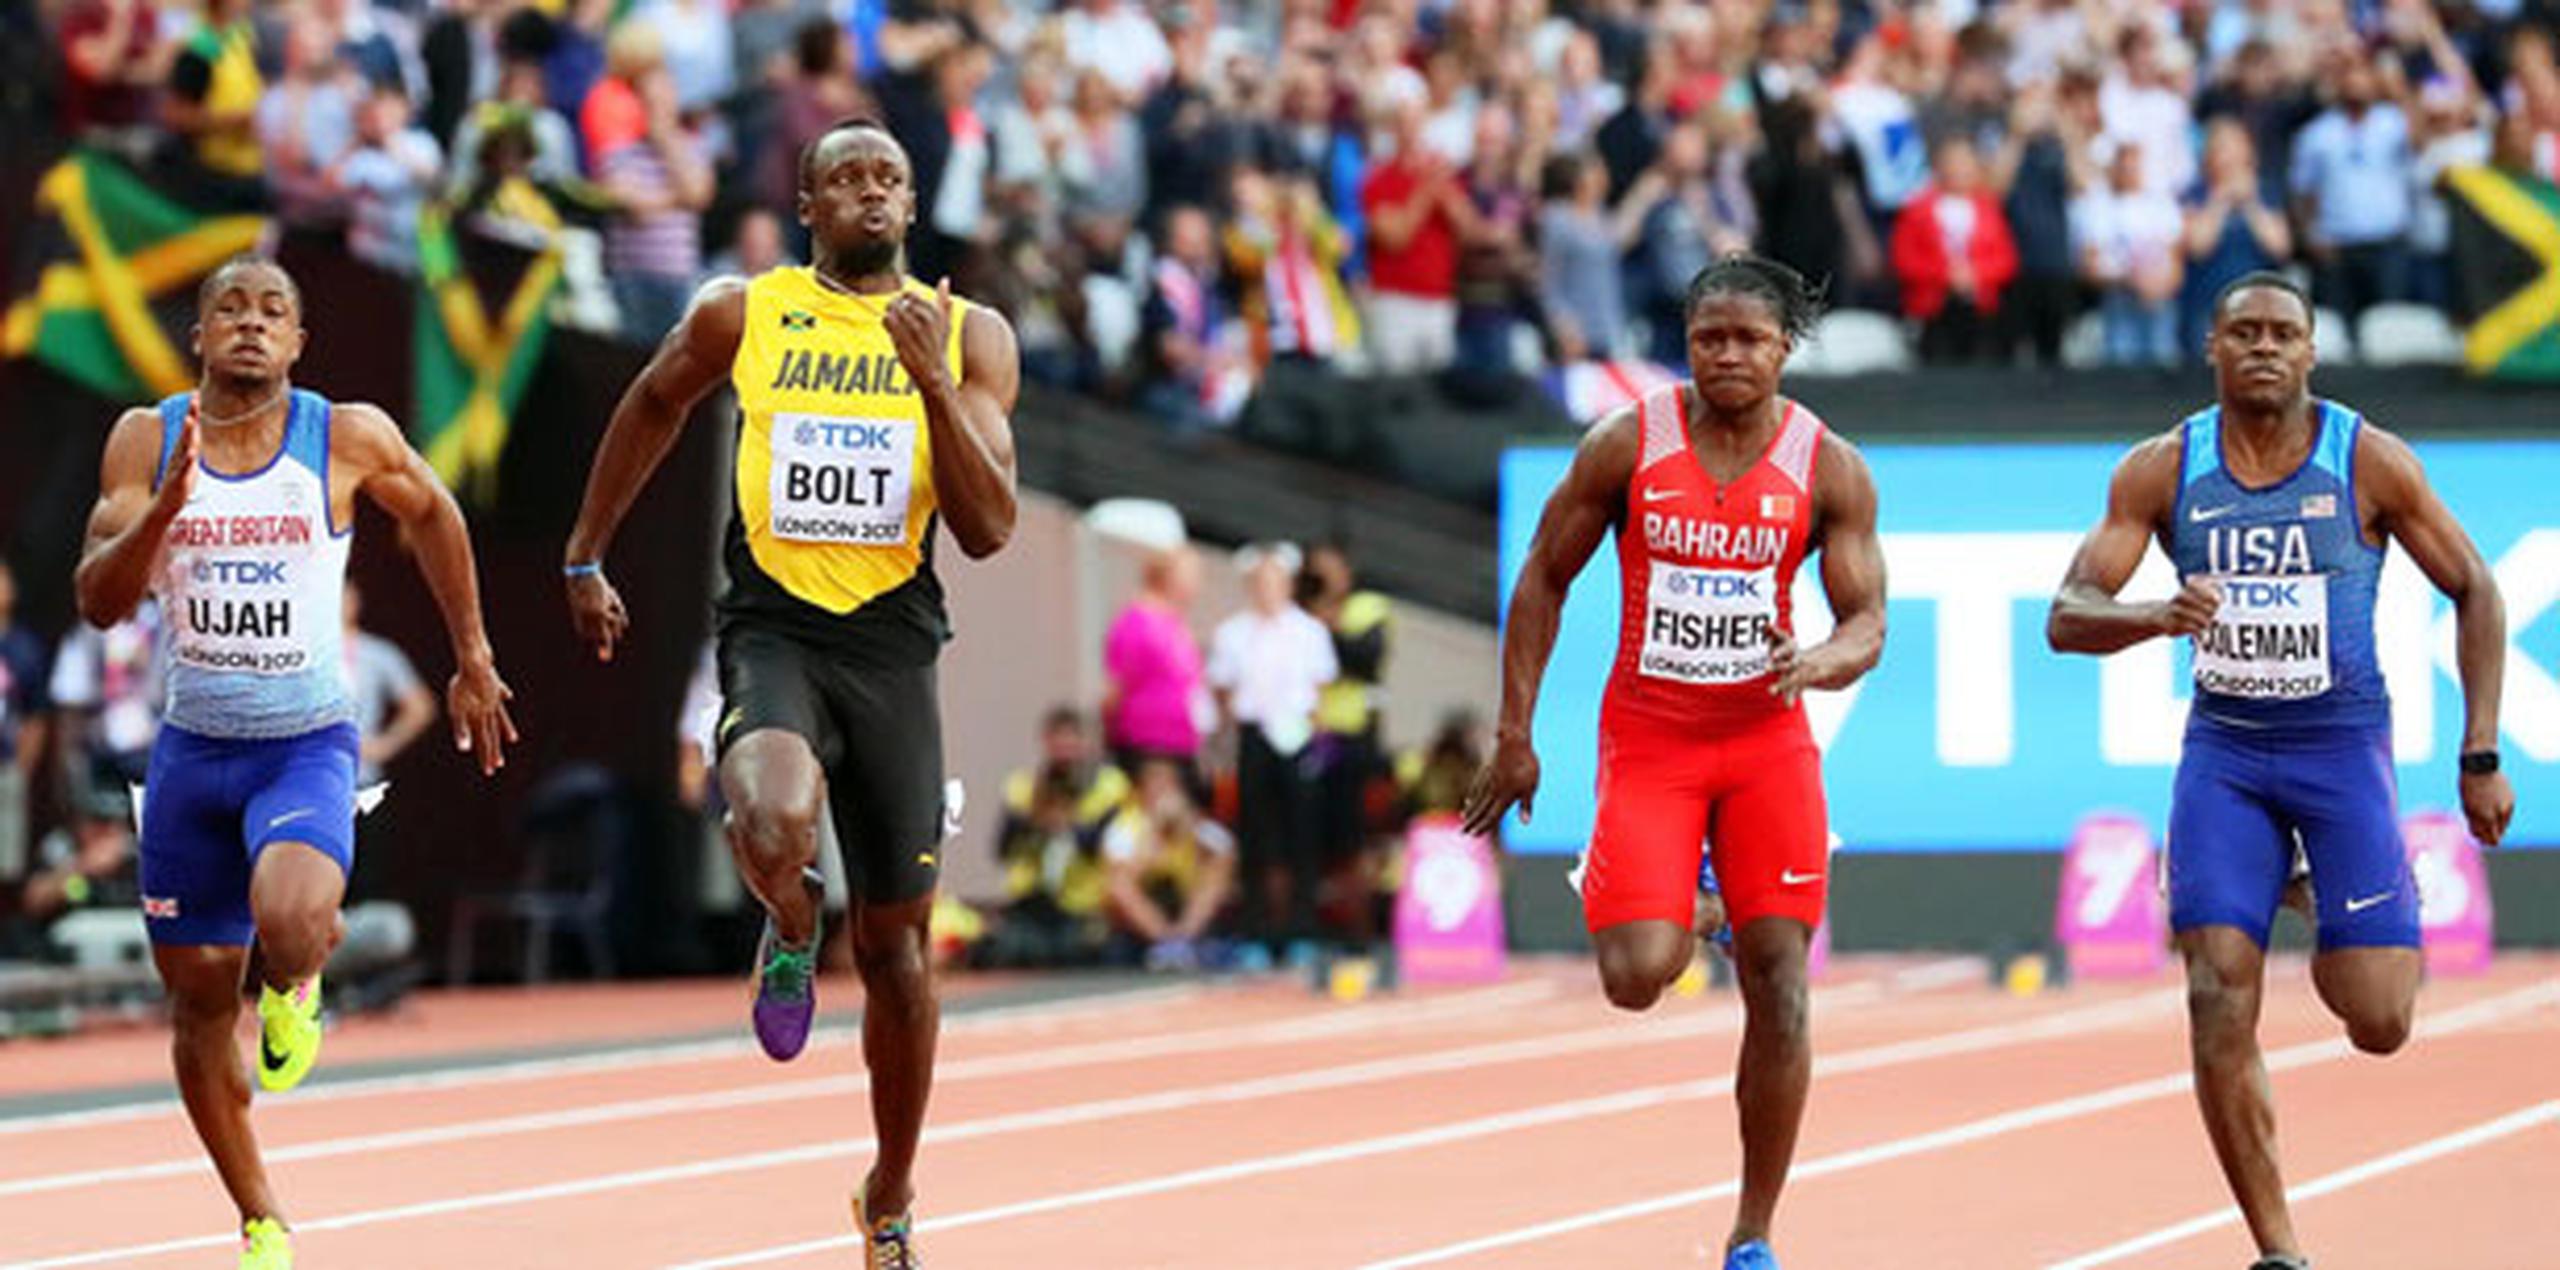 La final de 100 metros, última carrera individual de Bolt, se disputa hoy mismo. (EFE)